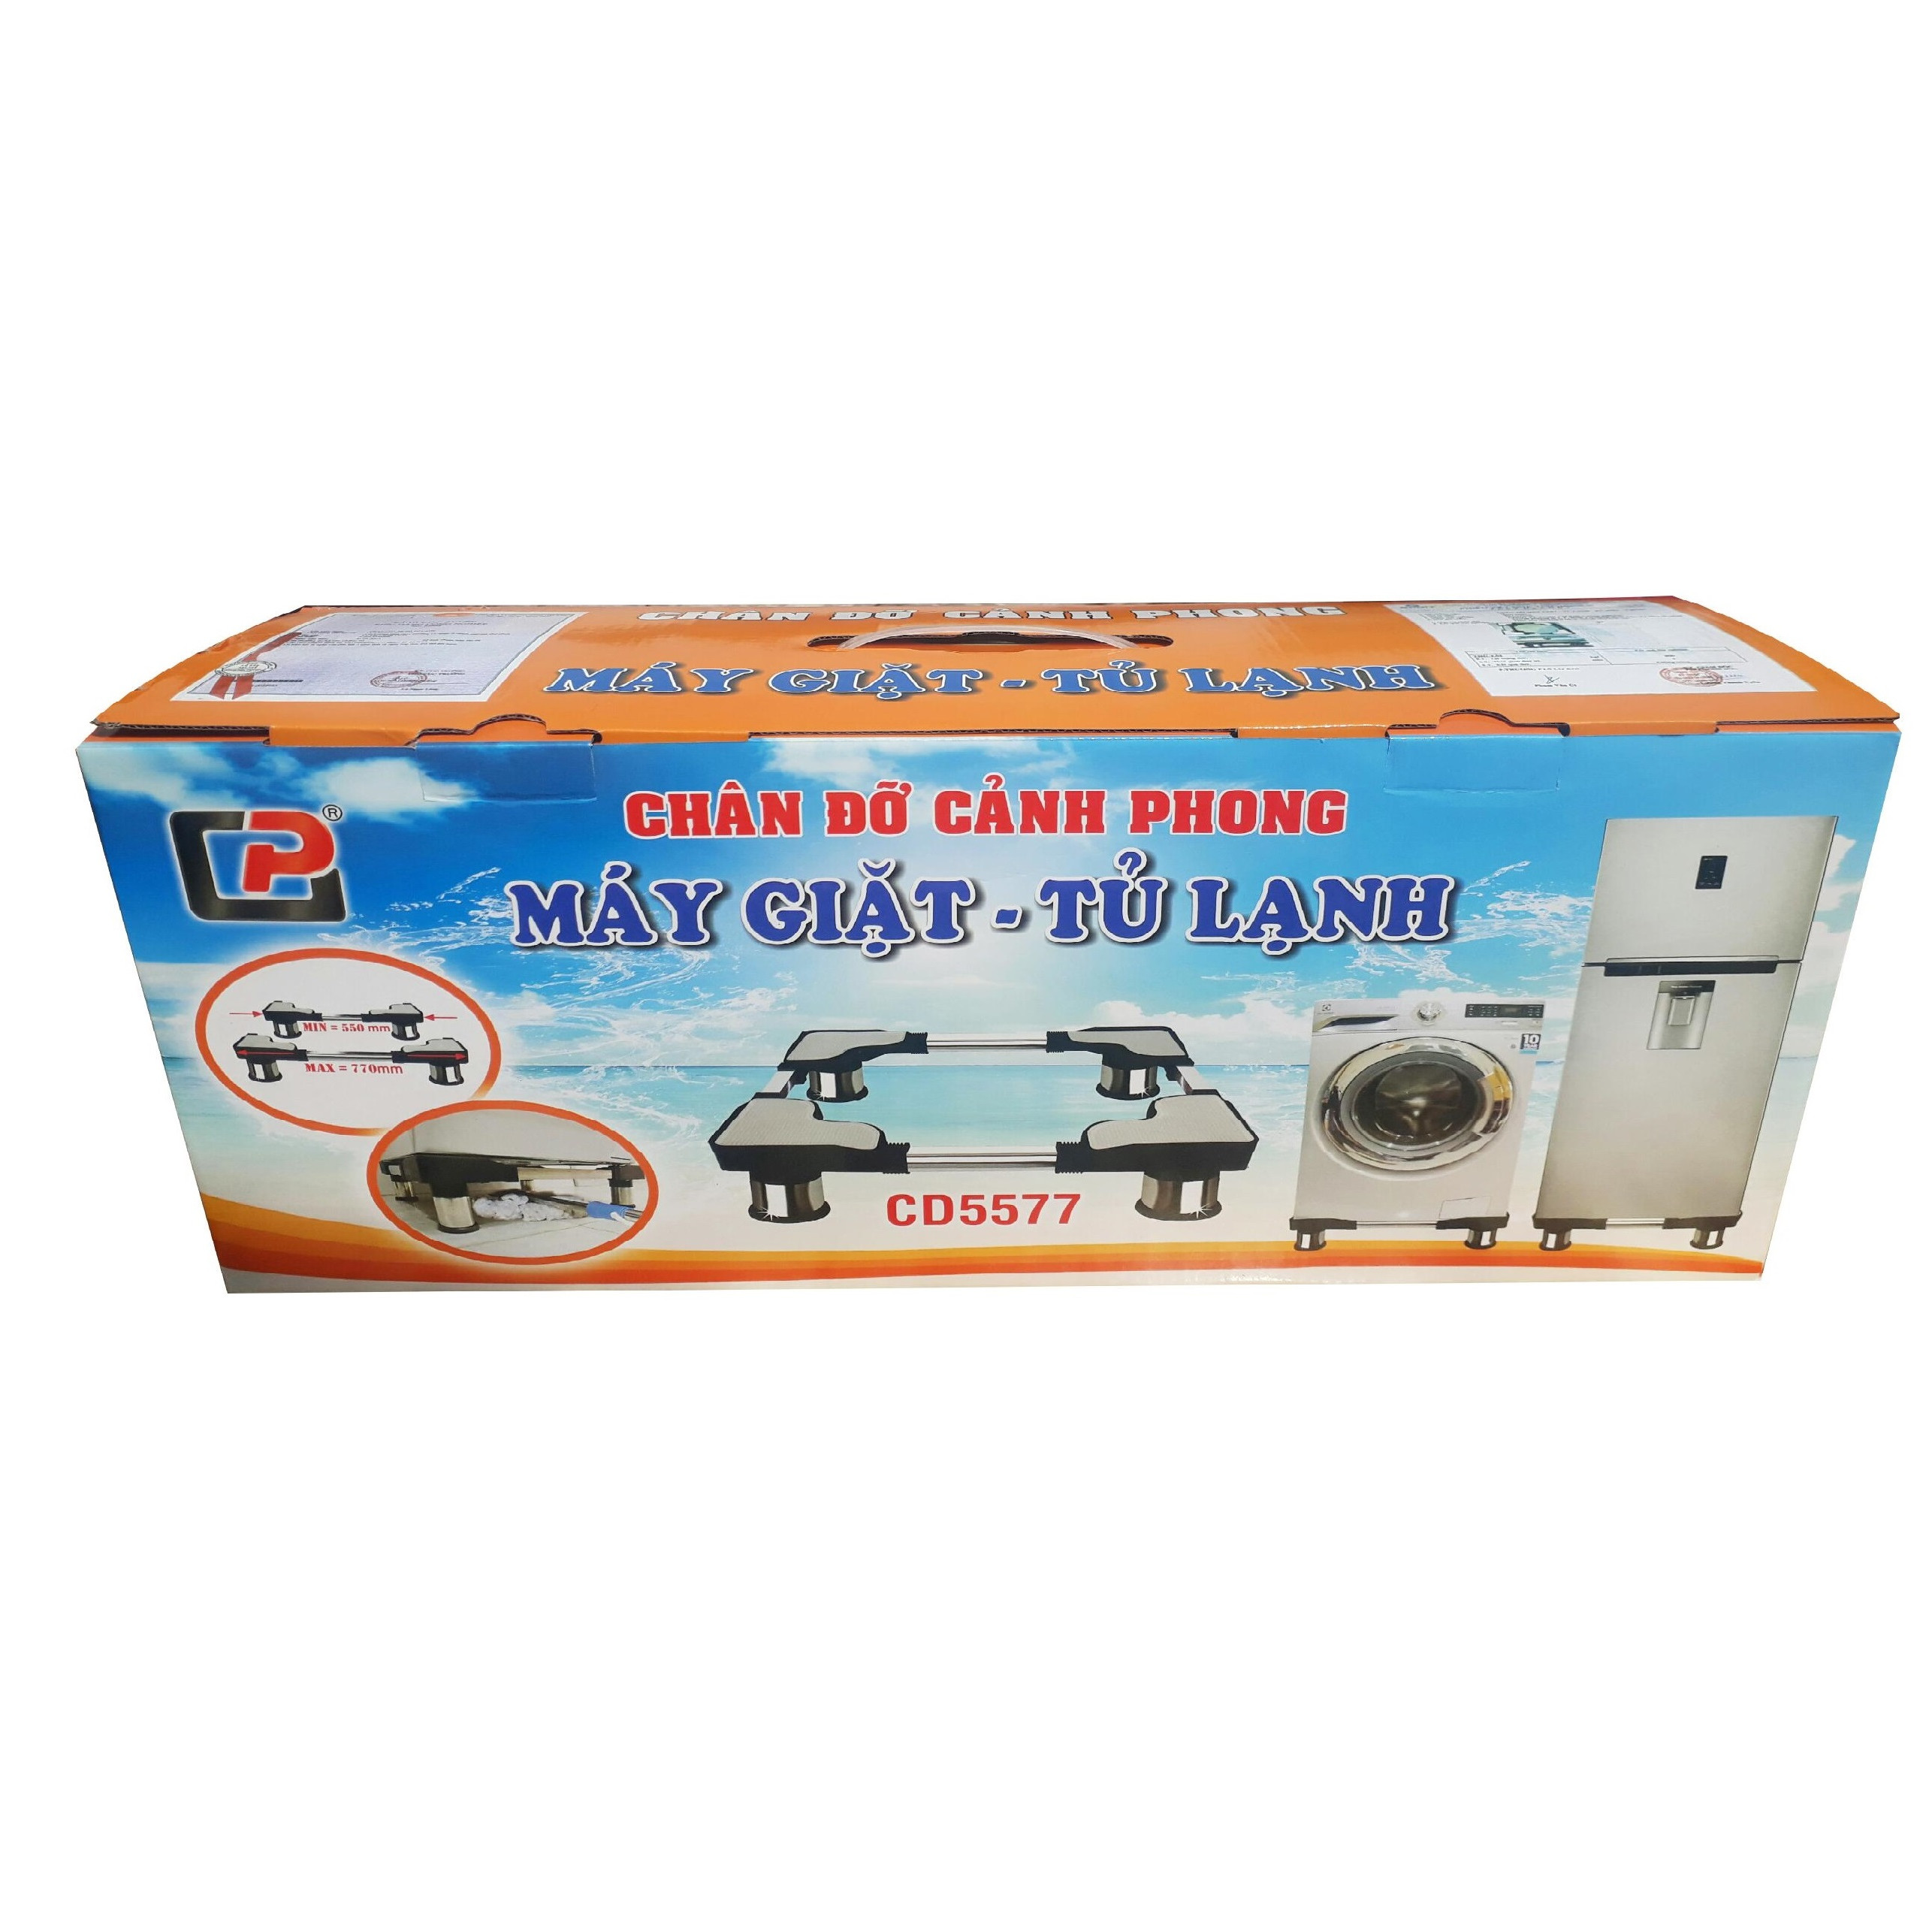 Chân Đỡ Máy Giặt Tủ Lạnh Cảnh Phong CD5577 ( Chân Inox 55-77cm)